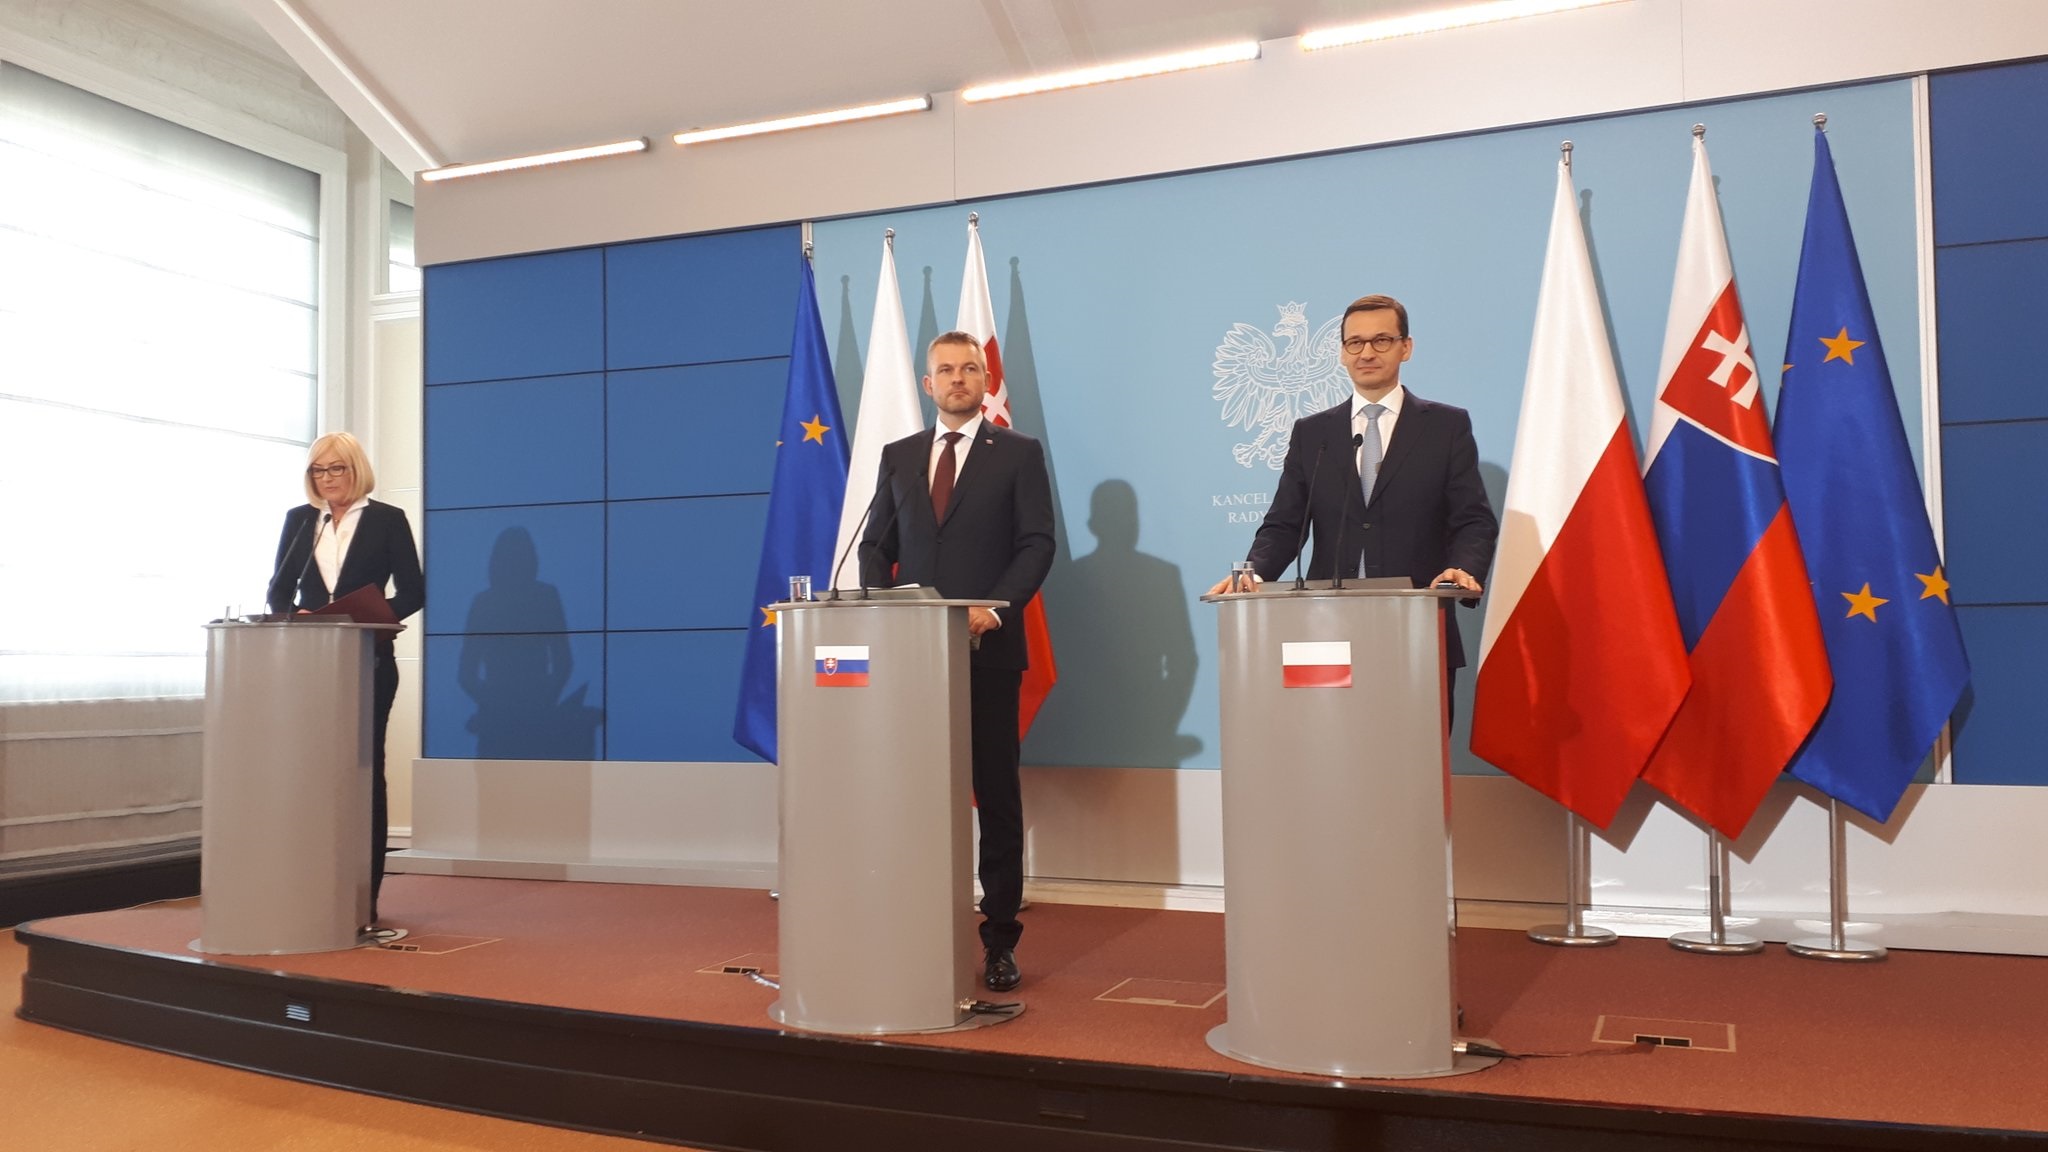 Spotkanie premierów Polski i Słowacji w Warszawie. Fot. Twitter, Kancelaria Prezesa Rady Ministrów